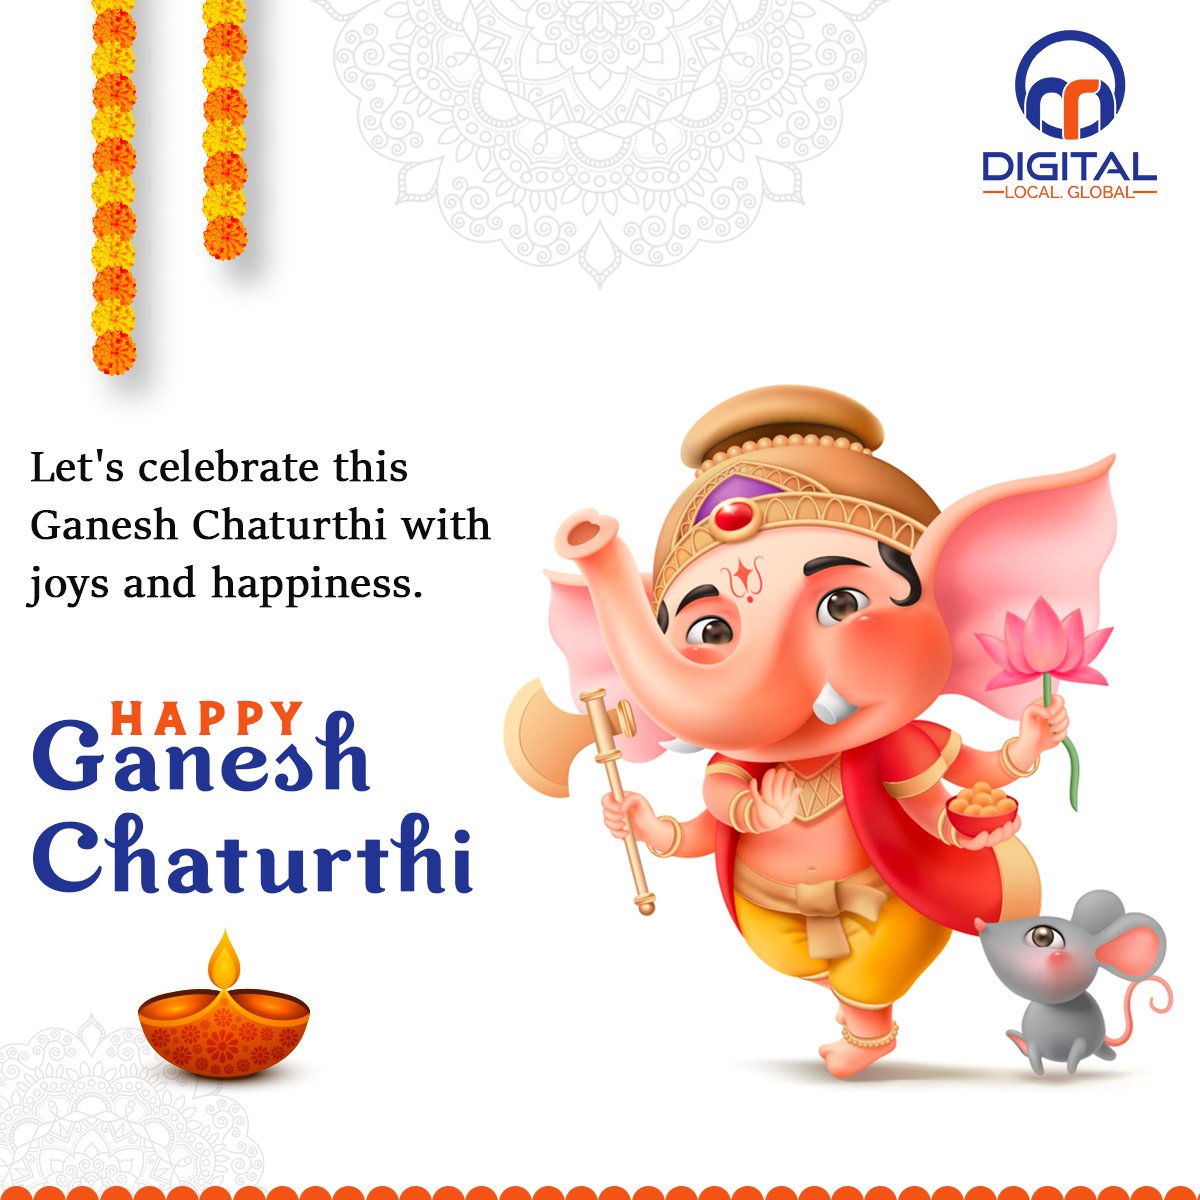 Let's celebrate this Ganesh Chaturthi with joy and happiness.

Happy Ganesh Chaturthi

#GaneshChaturthi2021 #HappyGaneshChaturthi #Ganeshotsav #digitalmarketing #seo #searchengineoptimaztion #SocialMediaMarketing #ppcads